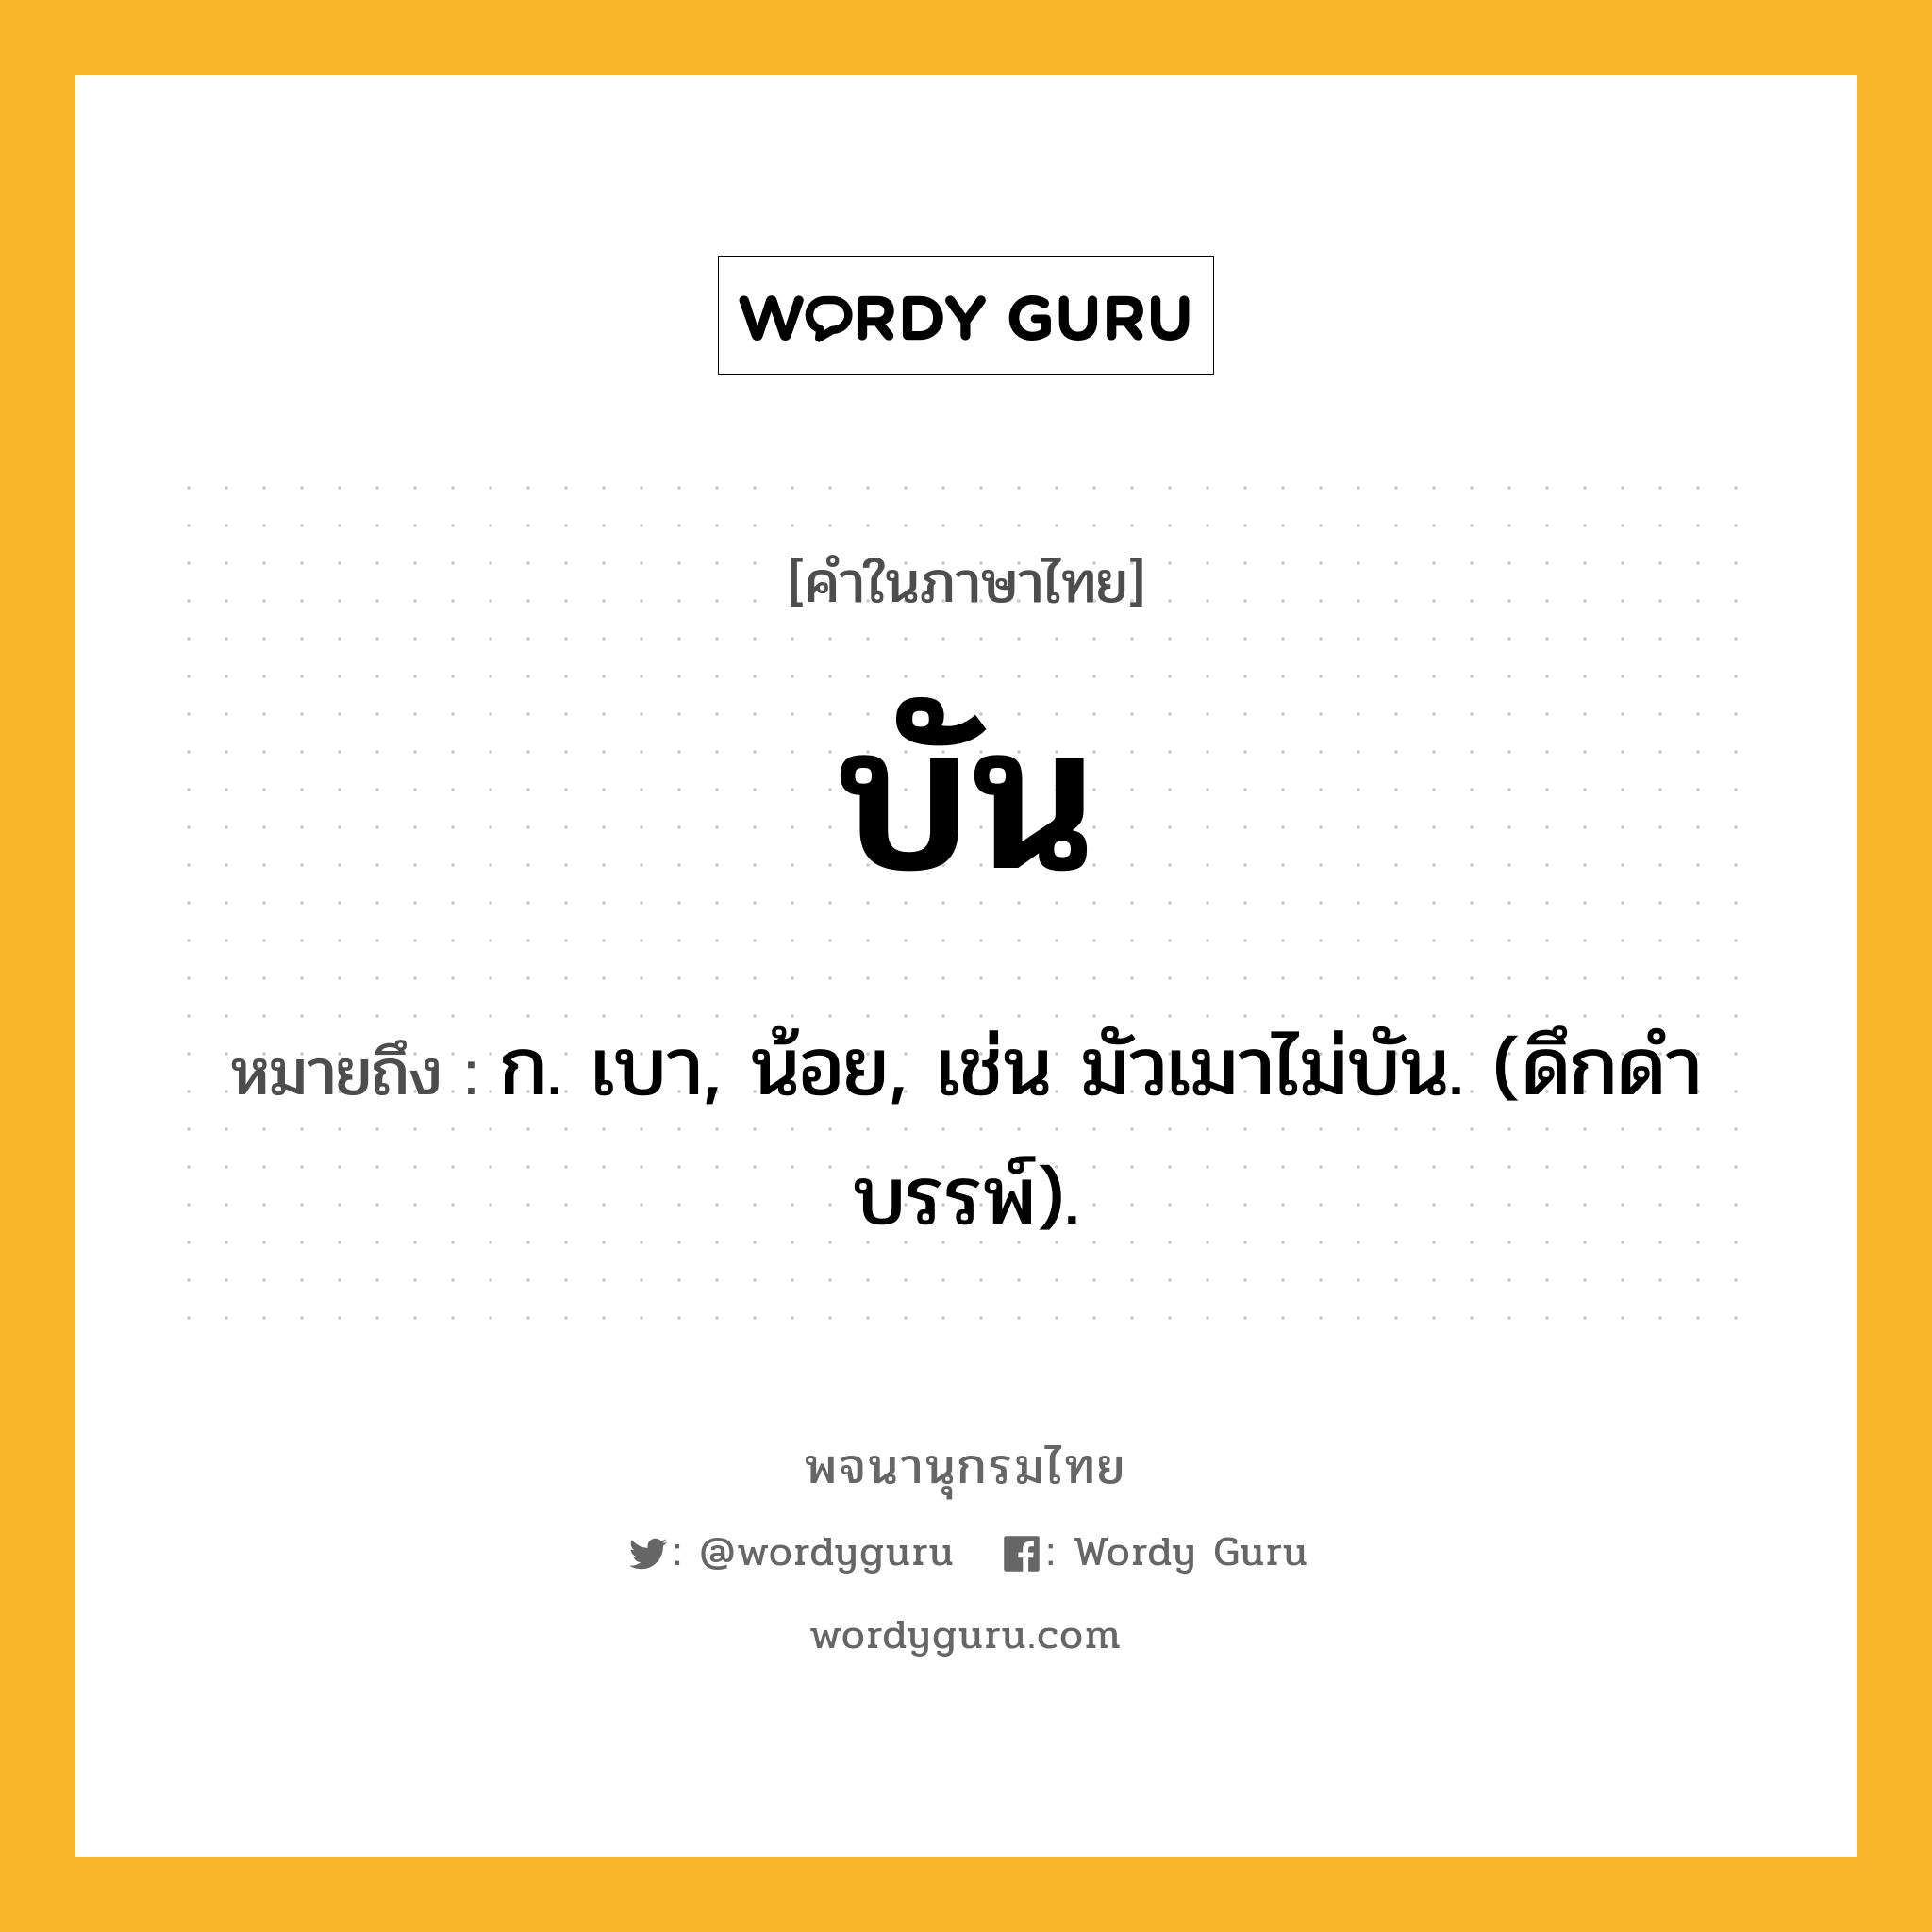 บัน หมายถึงอะไร?, คำในภาษาไทย บัน หมายถึง ก. เบา, น้อย, เช่น มัวเมาไม่บัน. (ดึกดําบรรพ์).